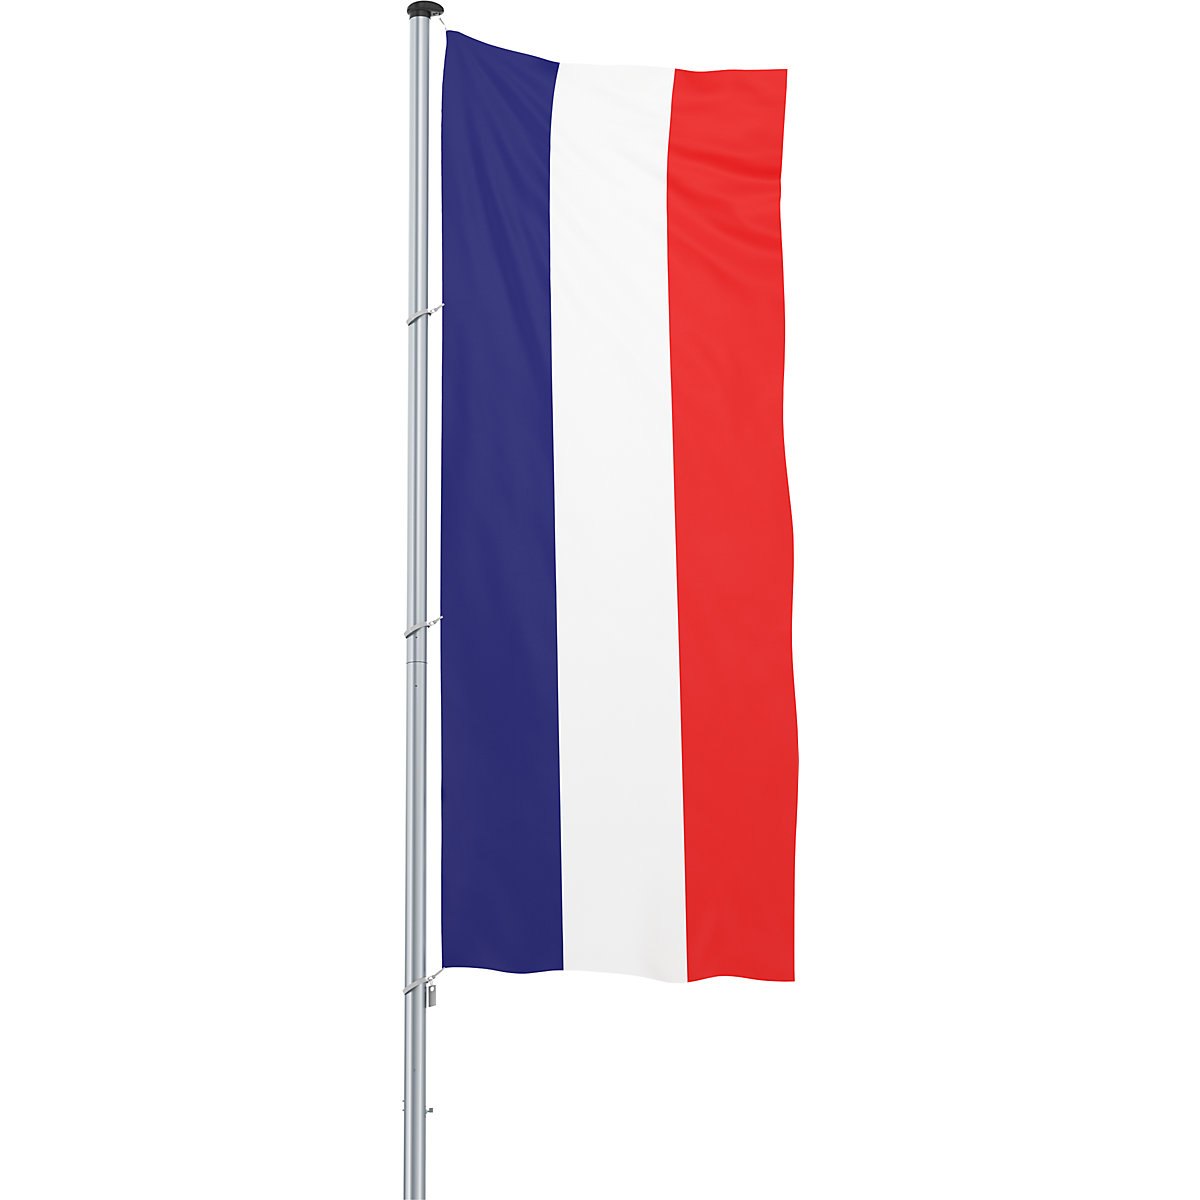 Vlajka pro vodorovné zavěšení/vlajka země – Mannus, formát 1,2 x 3 m, Francie-17